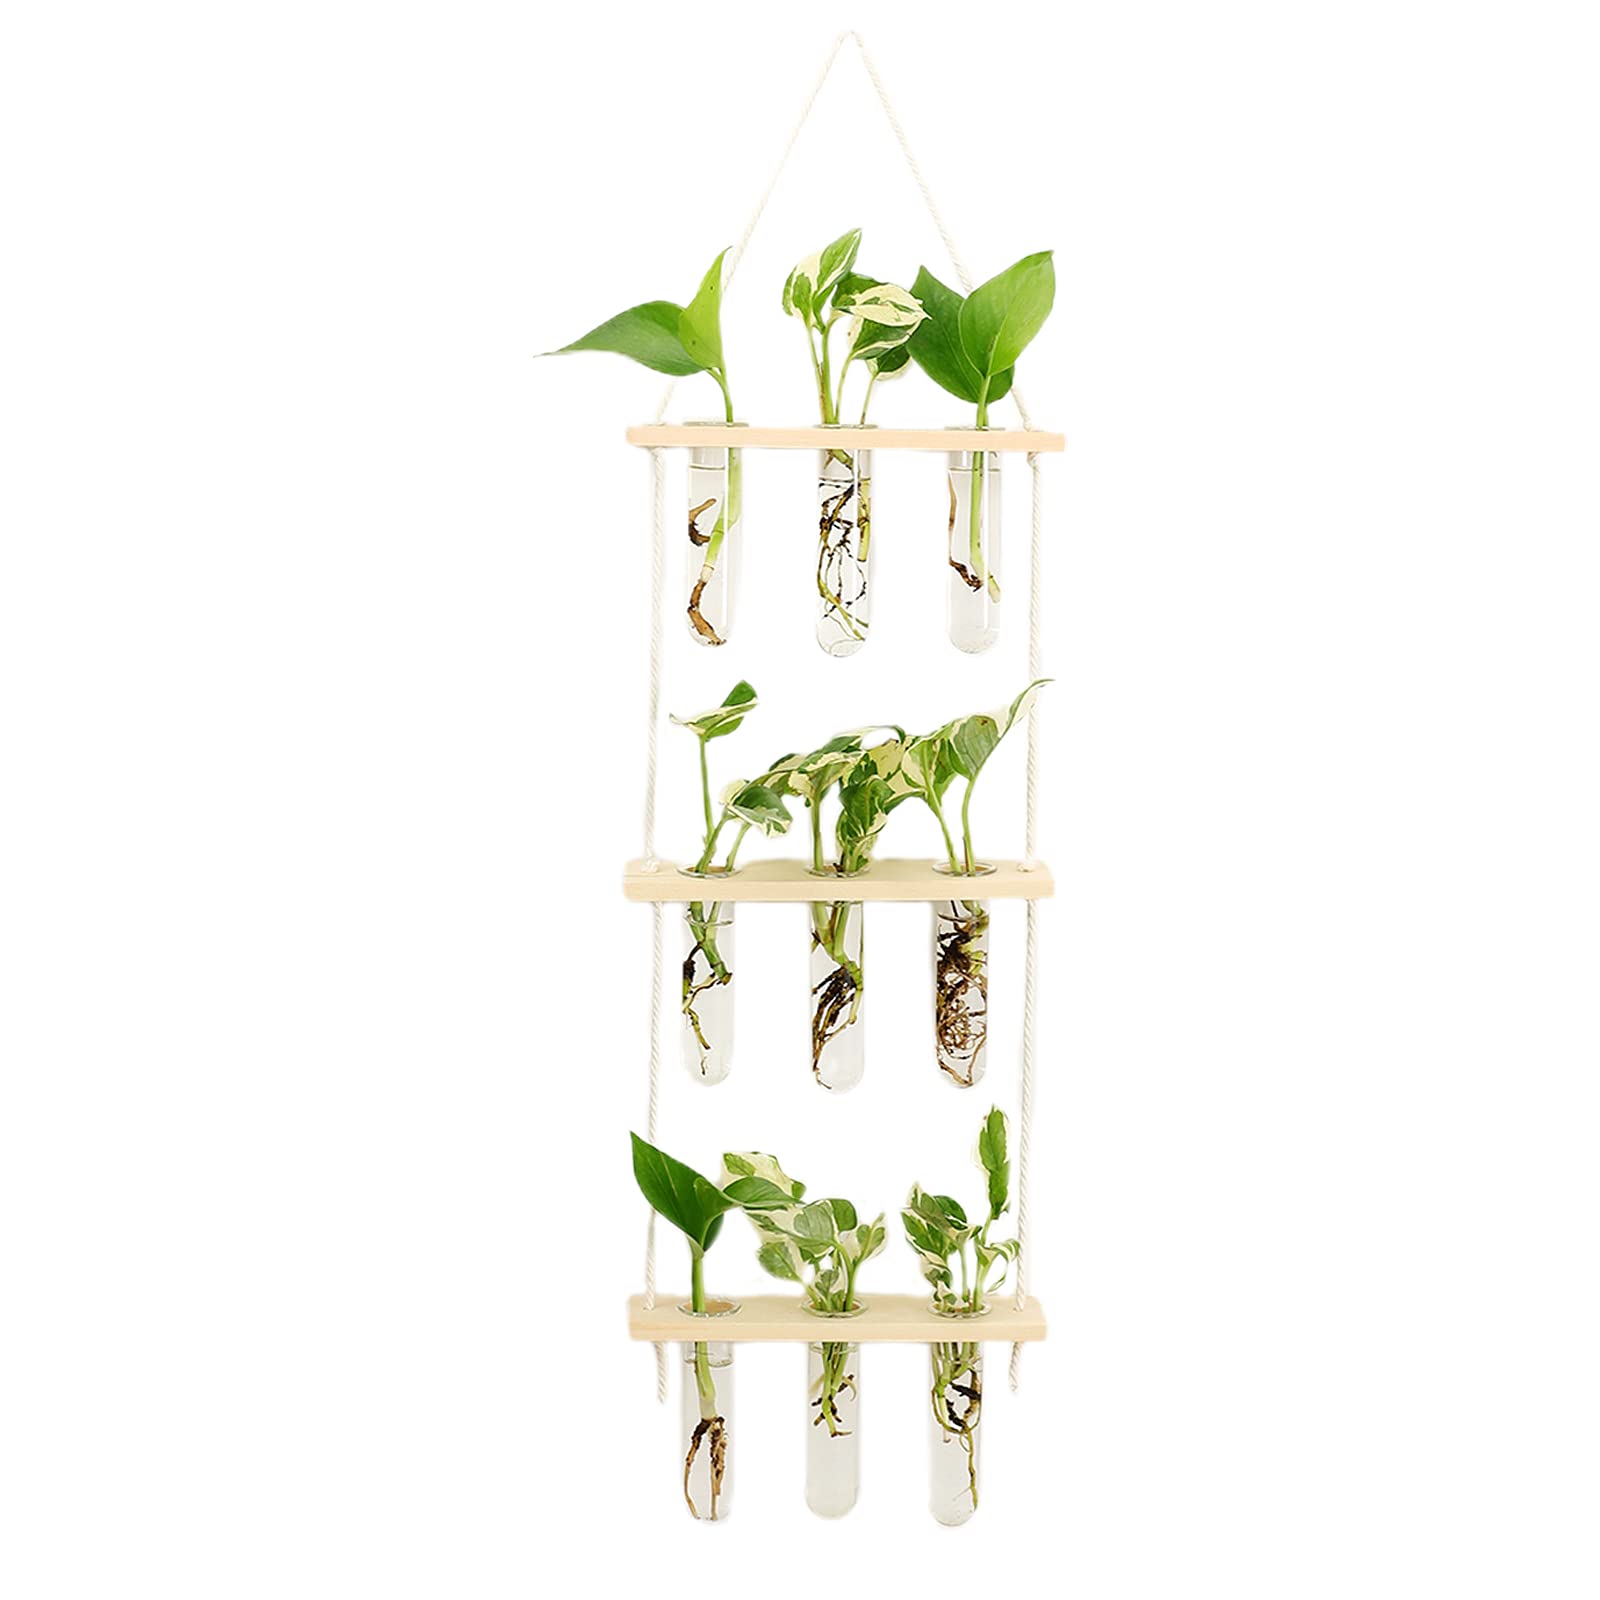 HLTER Wandbehang Glas-Pflanzgefäß, 3 Ebenen Mini Reagenzglas Blumenvasen Pflanzen-Terrarium mit Holzständer Reagenzglas Vase Air Planter Halter für Hydrokulturpflanzen